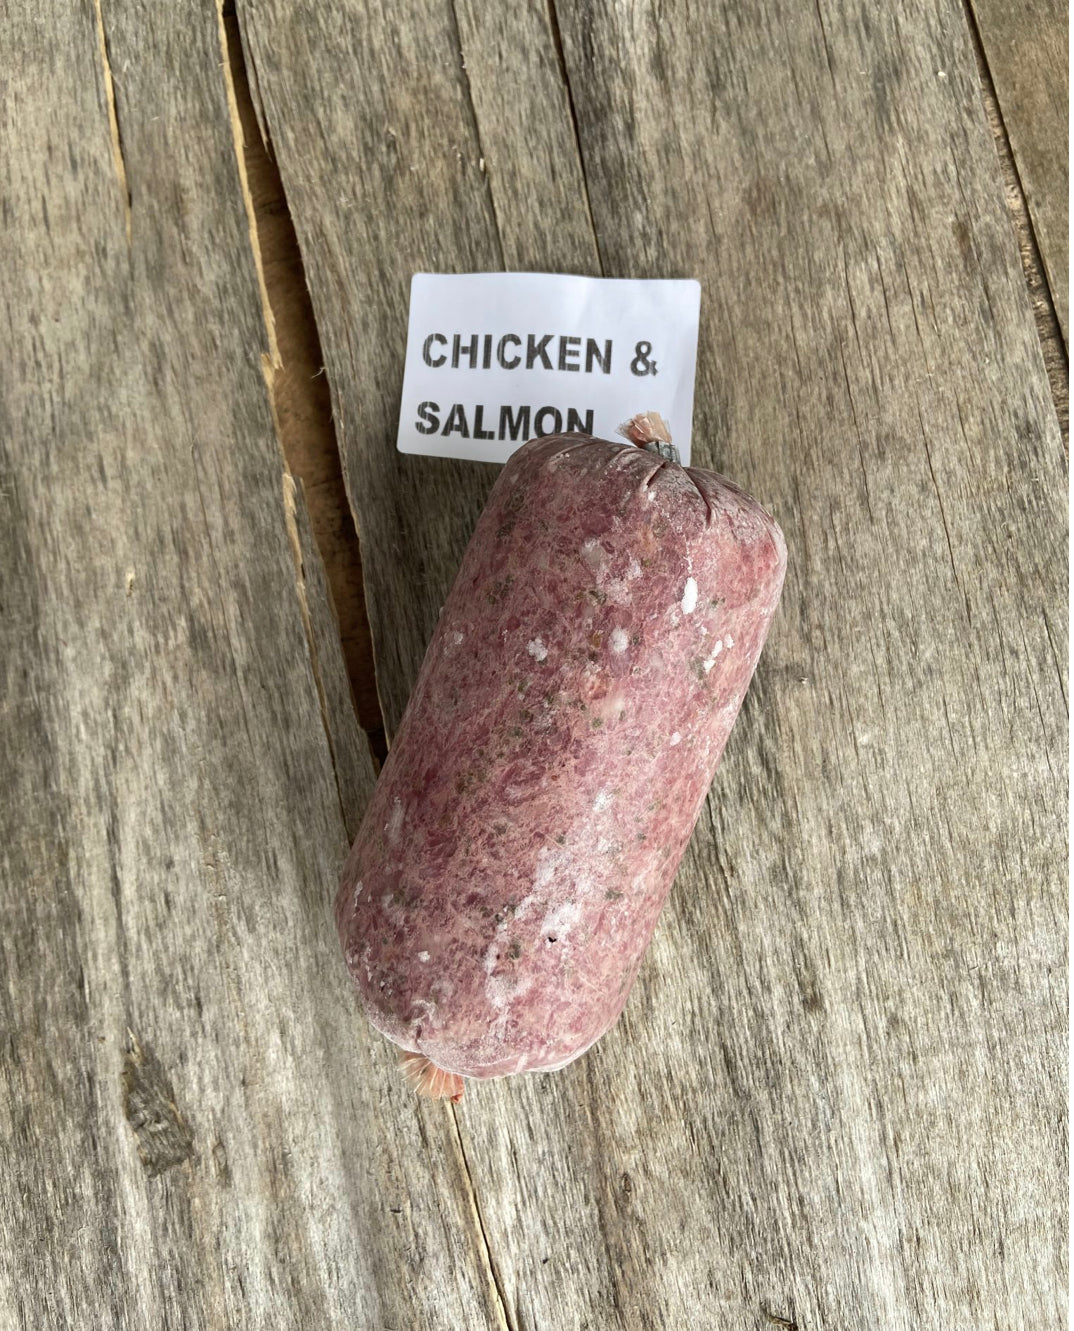 Chicken & salmon raw mince